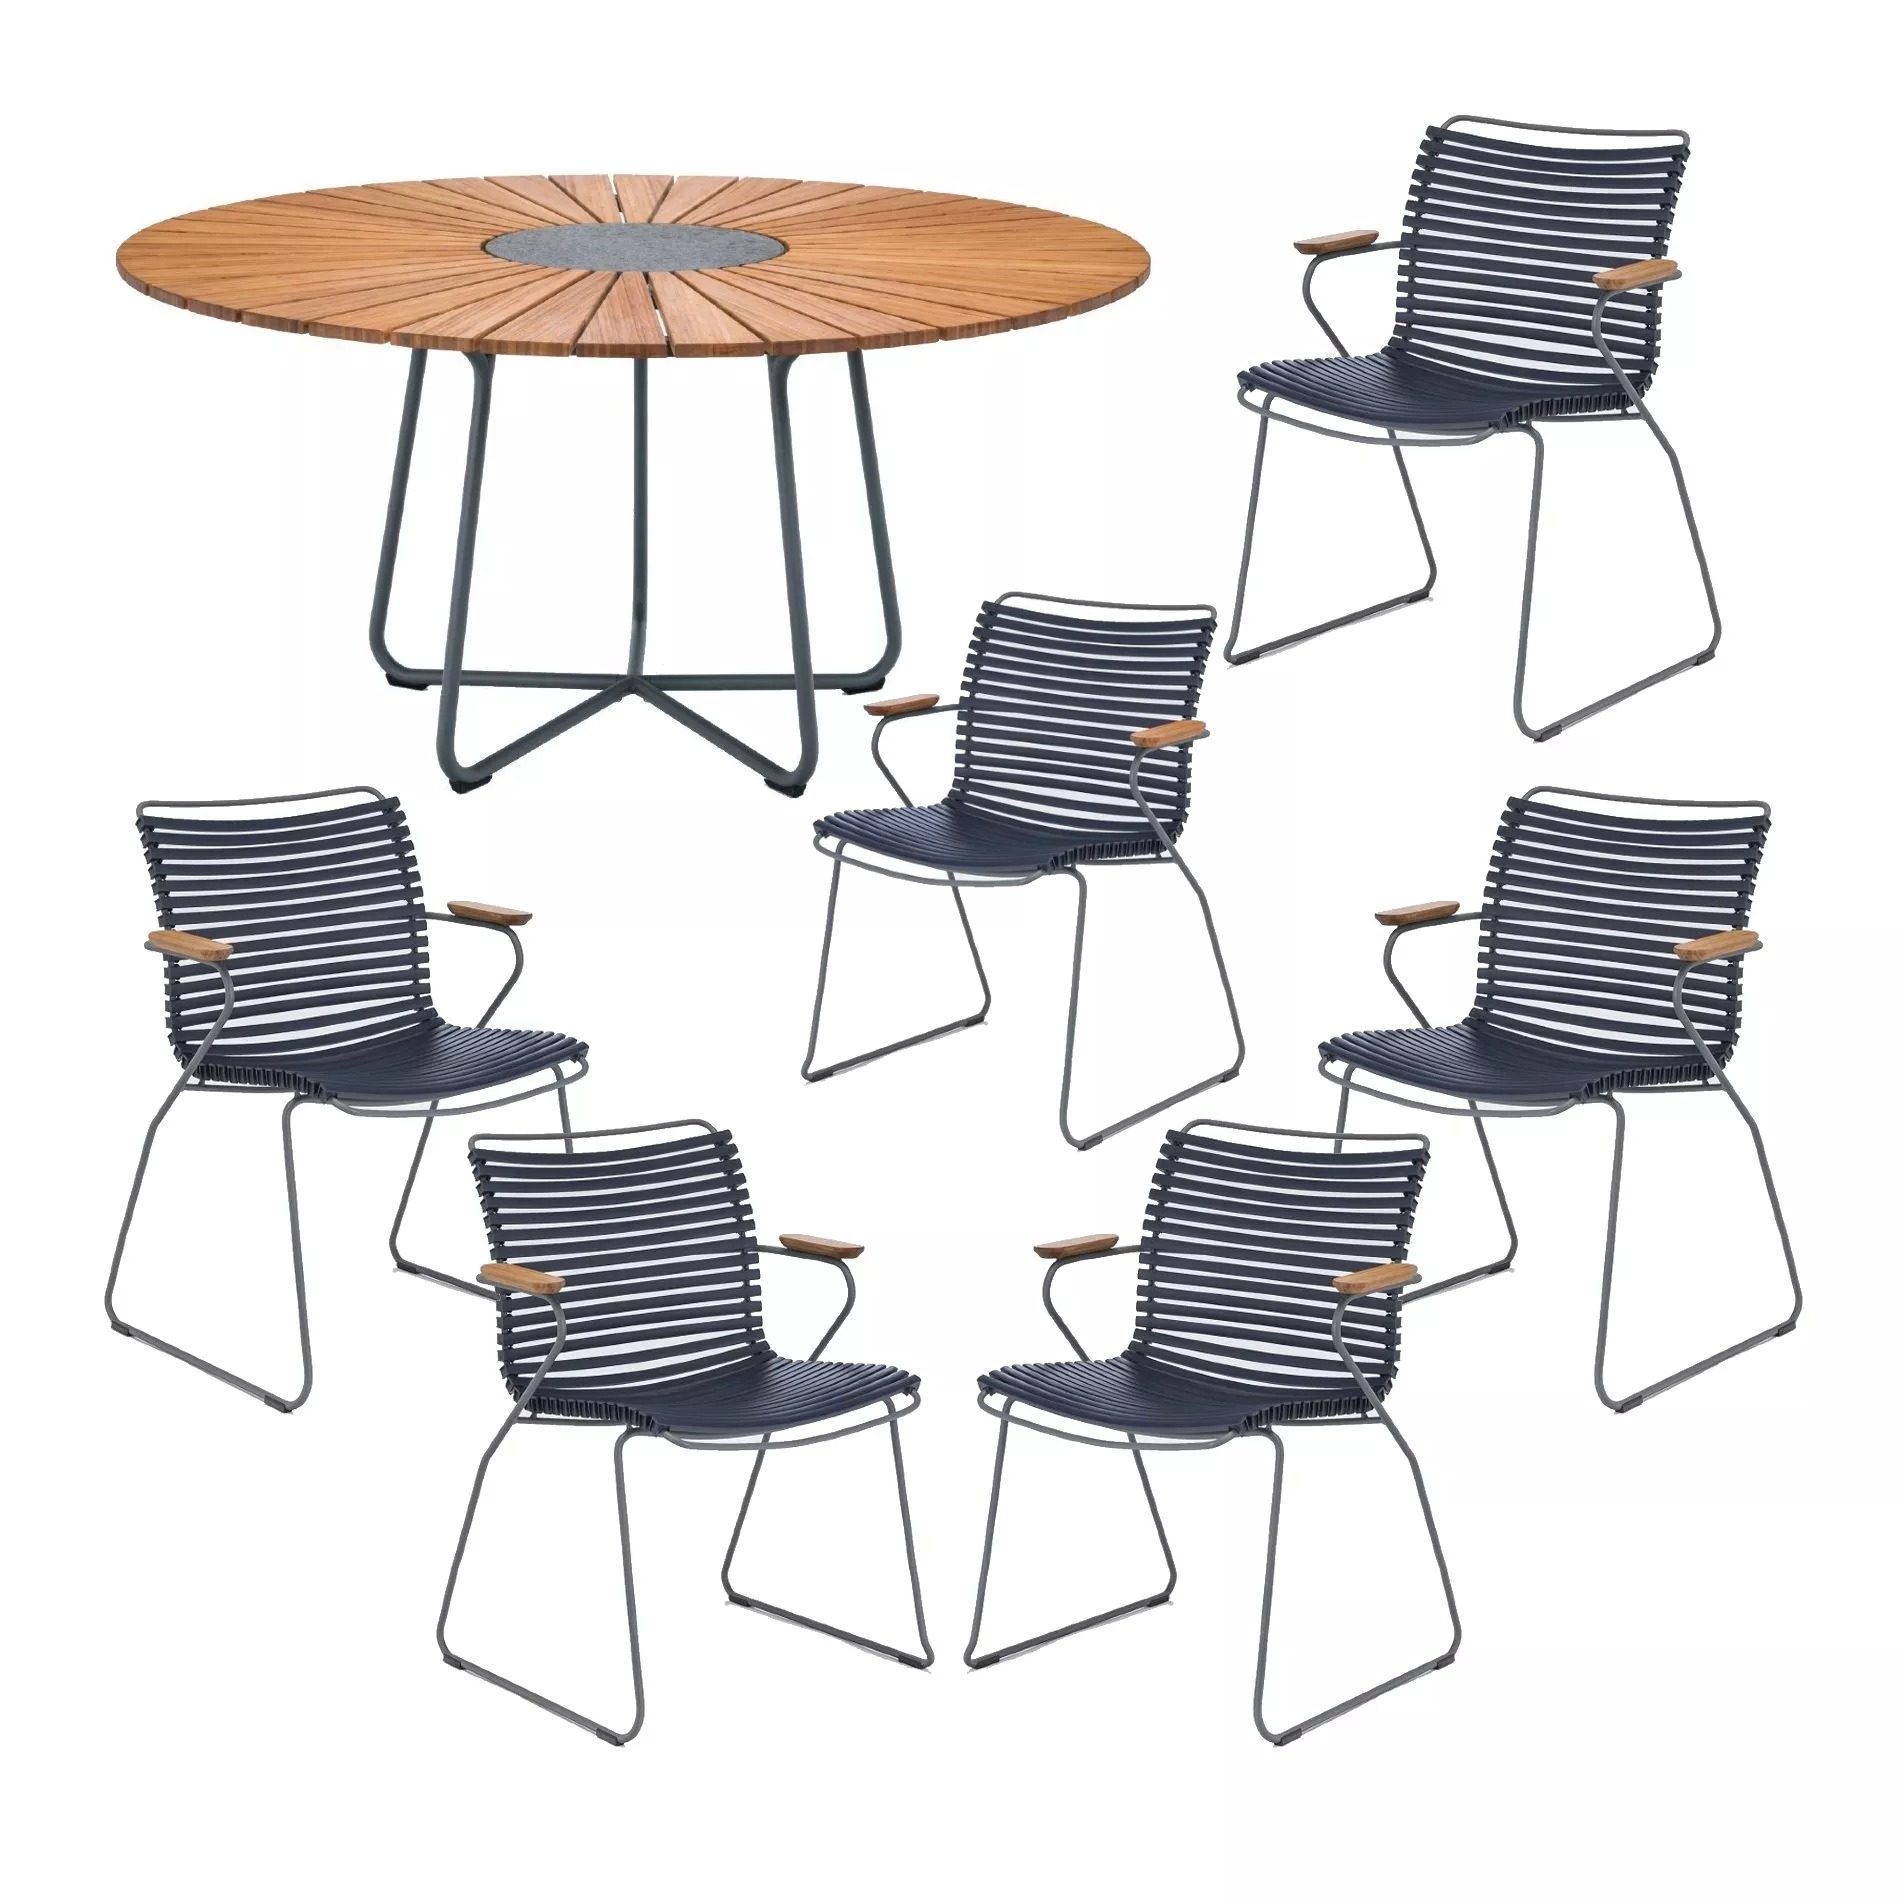 Houe Gartenmöbel-Set mit Tisch "Circle" Ø 150 cm und 6x Stapelsessel "Click", Lamellen dunkelblau, Tischplatte Bambus